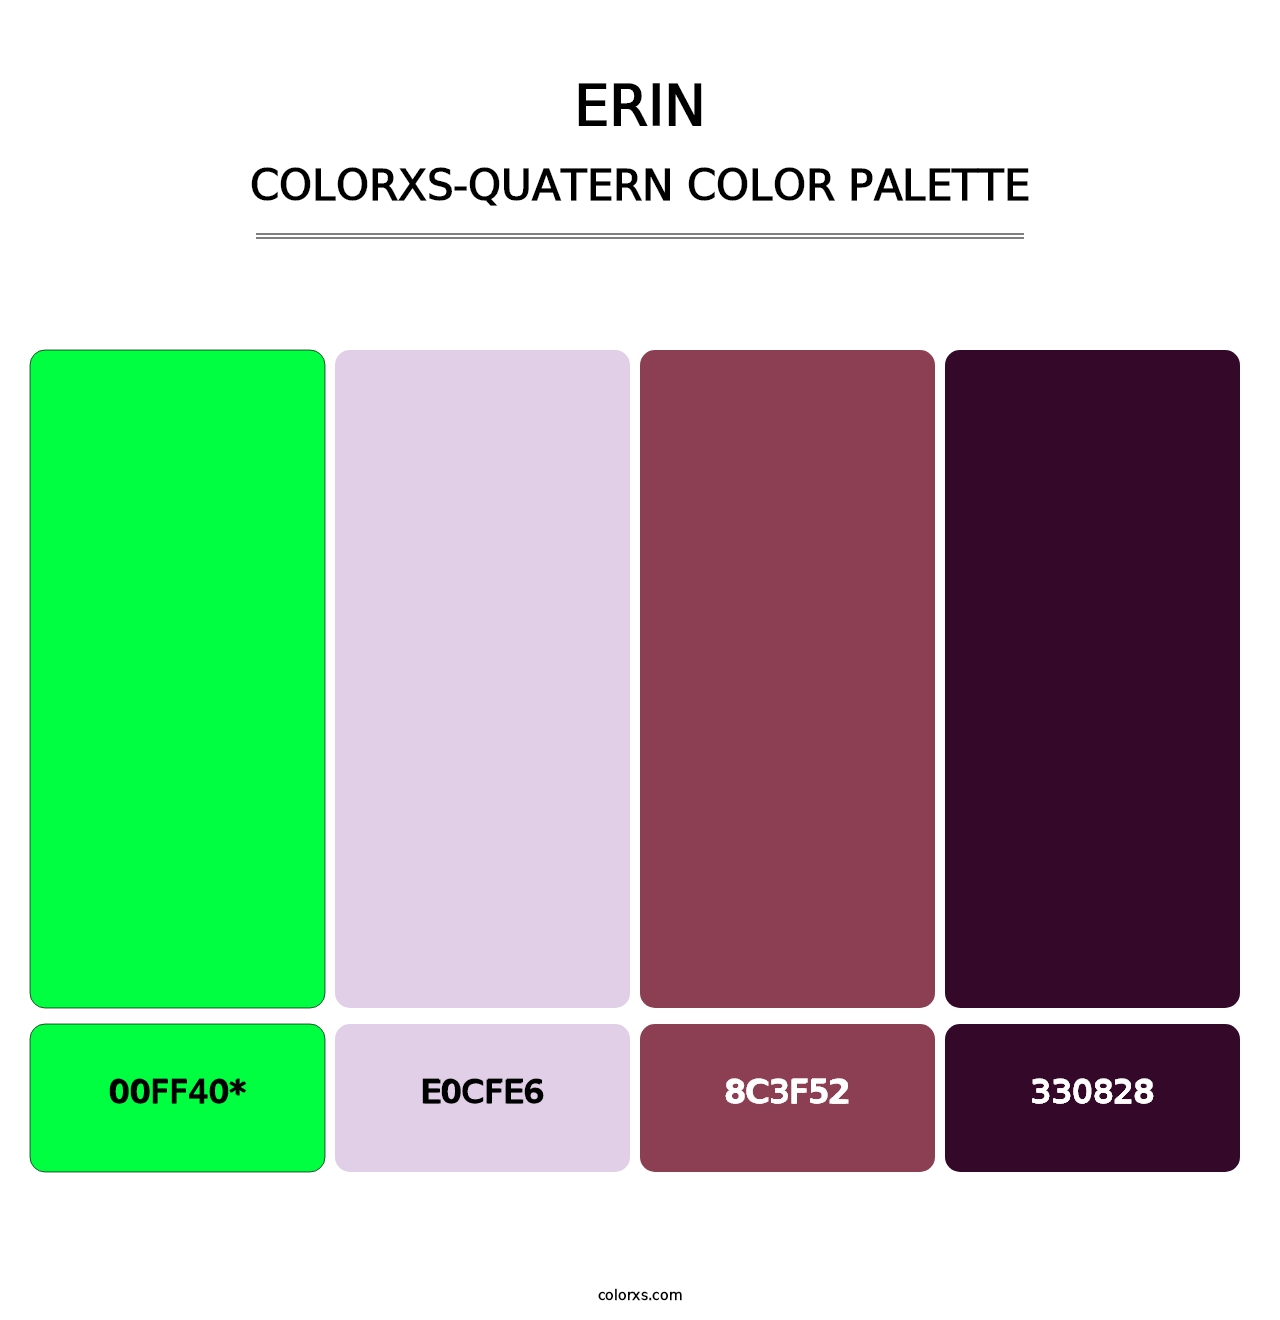 Erin - Colorxs Quatern Palette